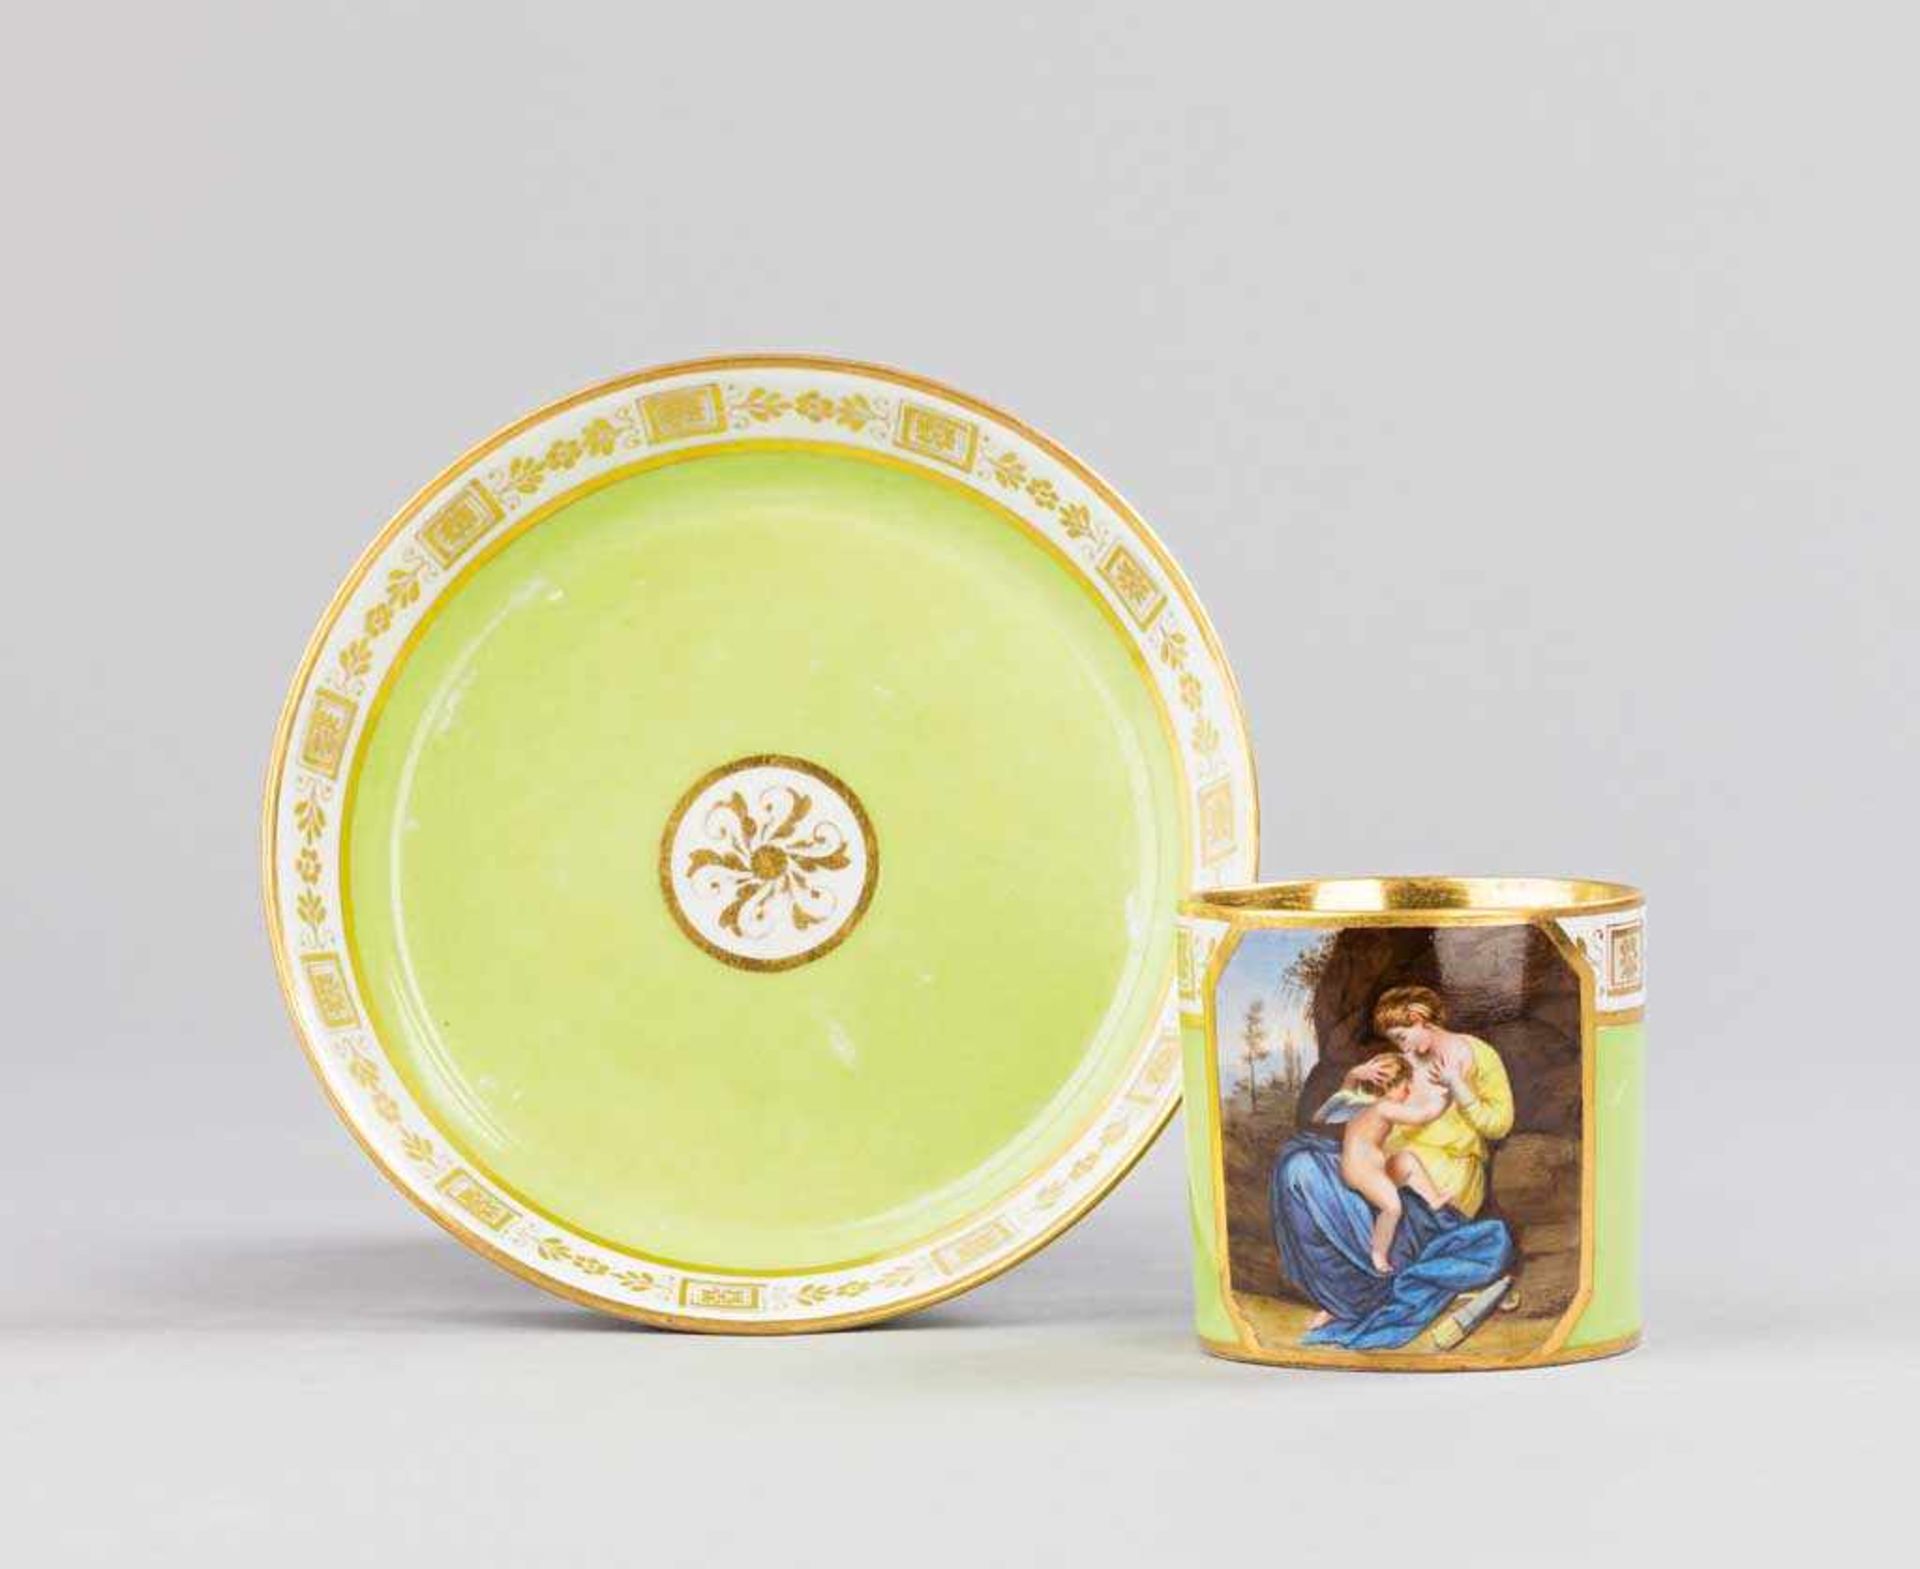 Klassizistische Wiener Tasse mit Untertasse. Hellgrüner Fond mit feiner Goldkante. Auf der Cuppa